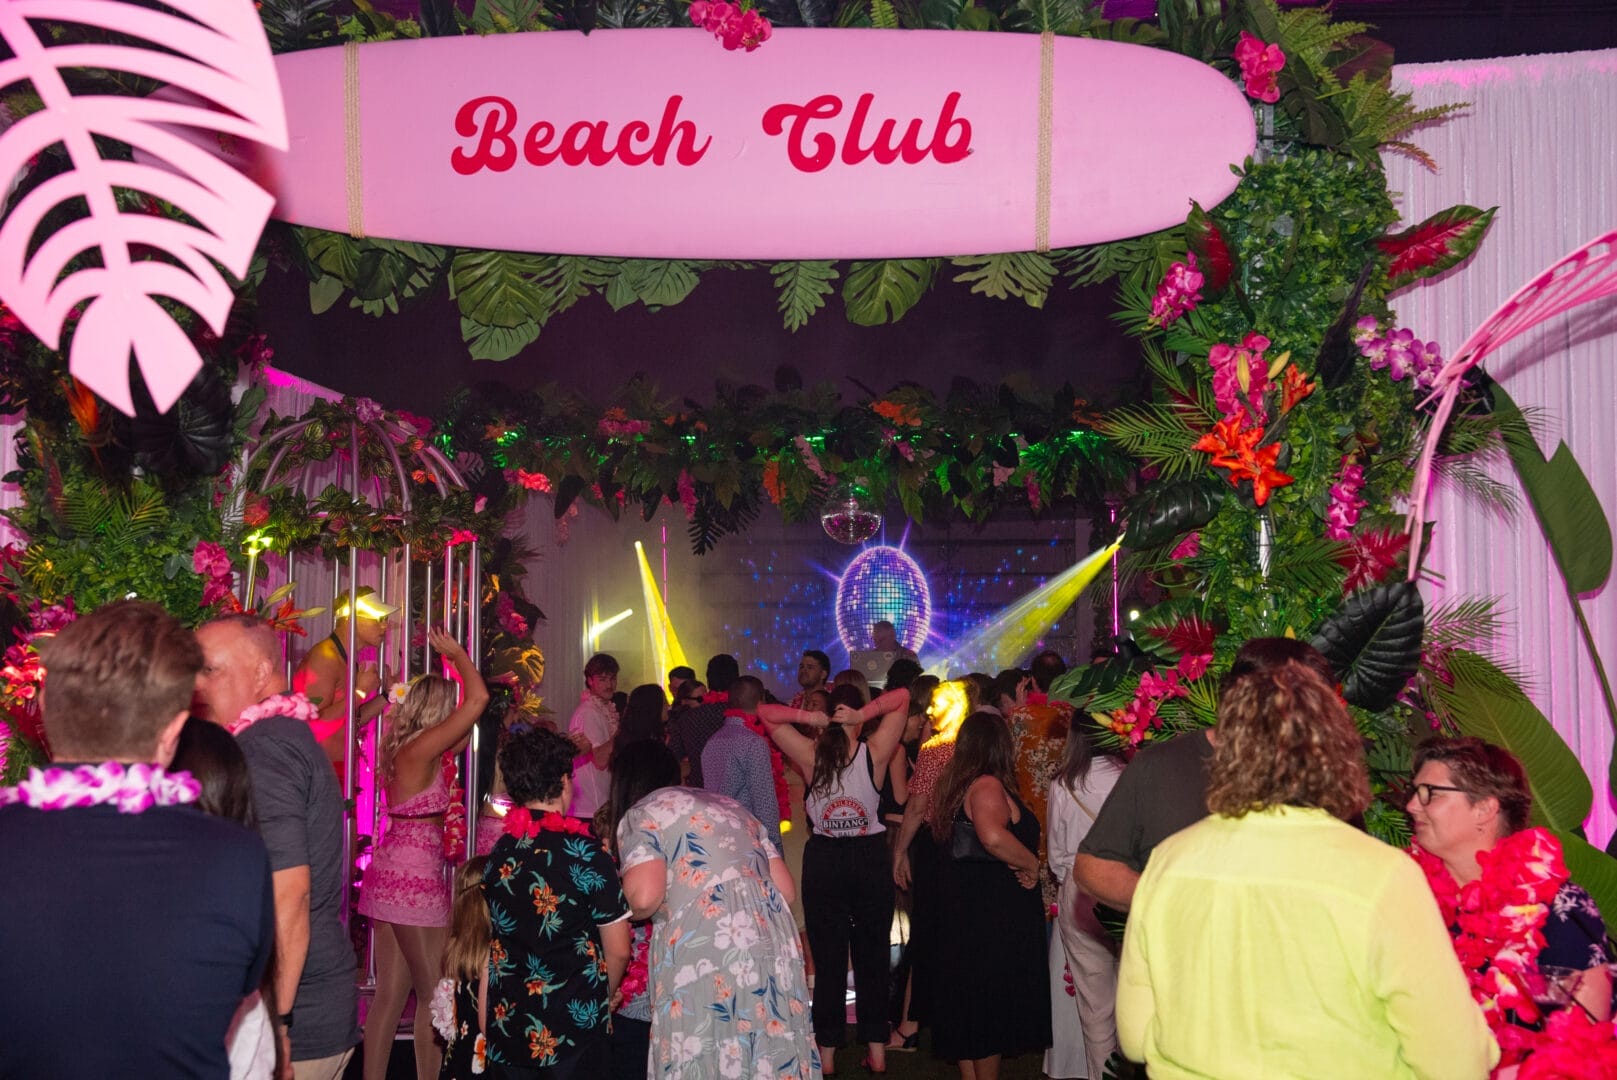 The Beach Club dance floor area at Taylor's 21st